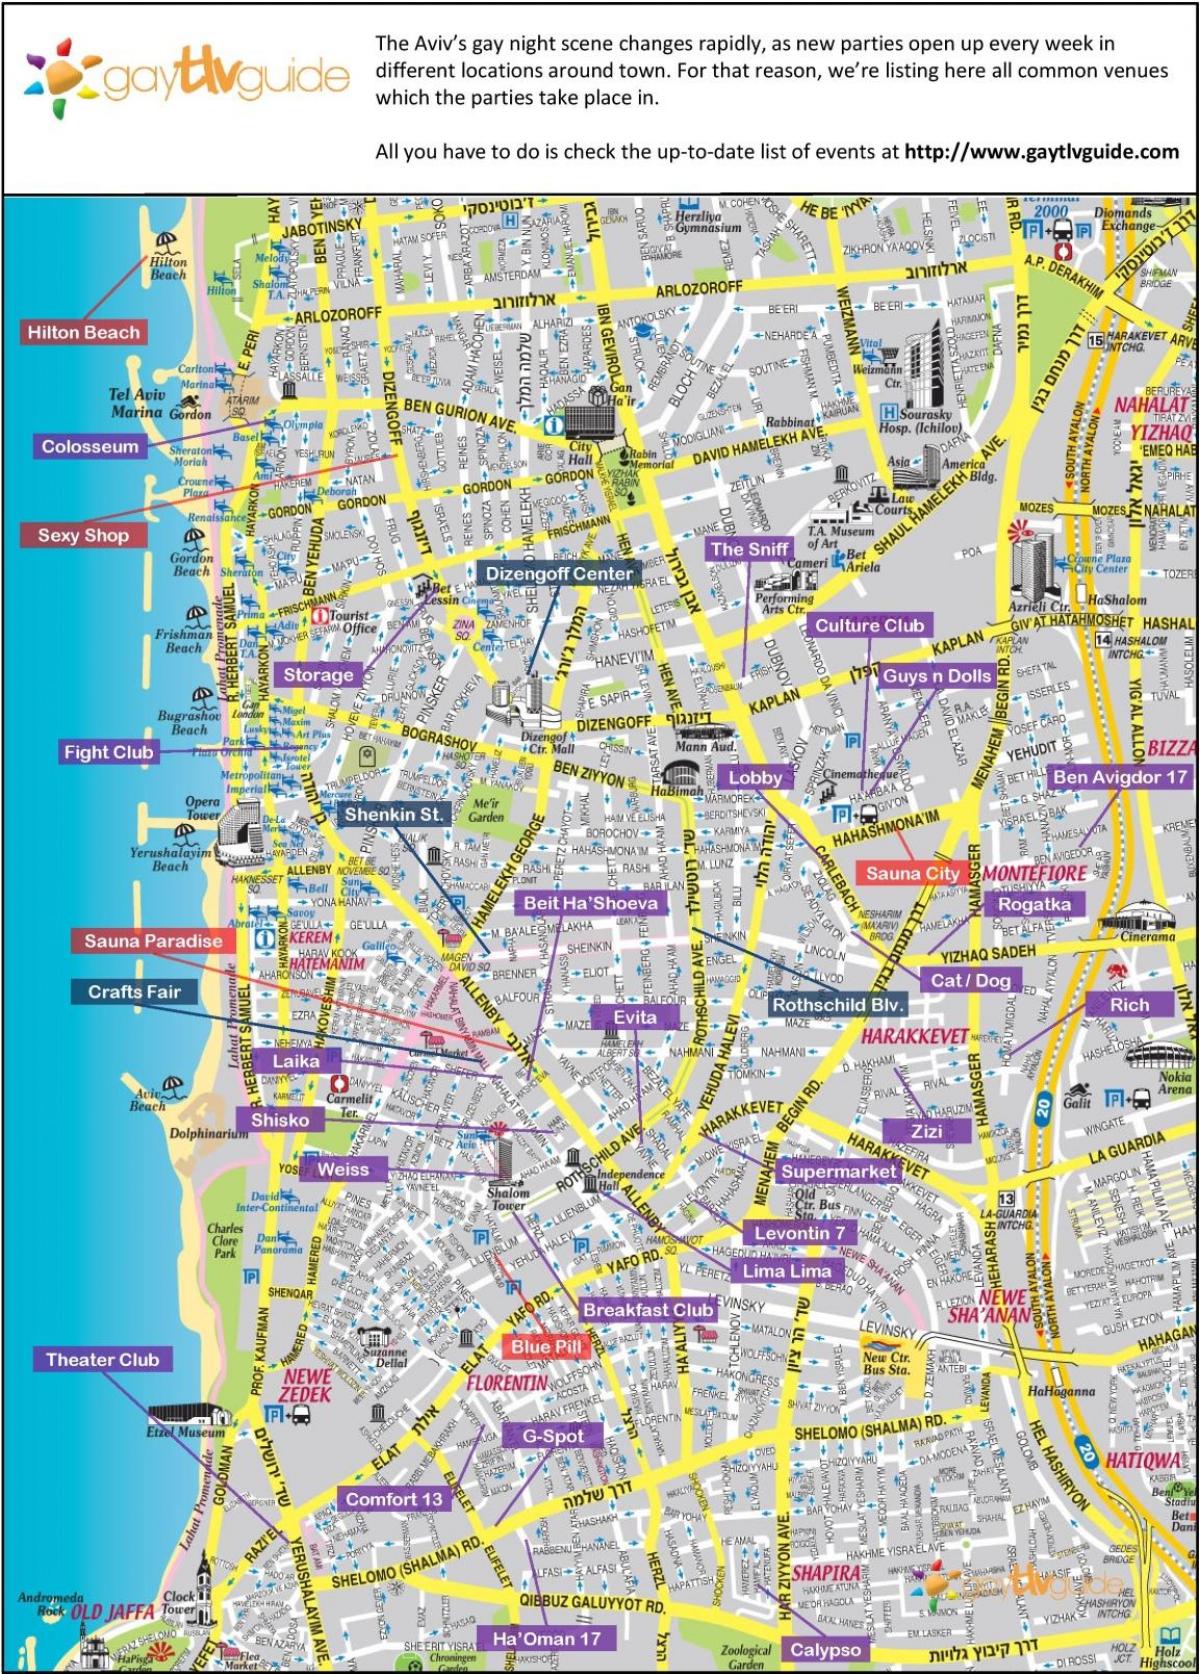 kart av homofile Tel Aviv